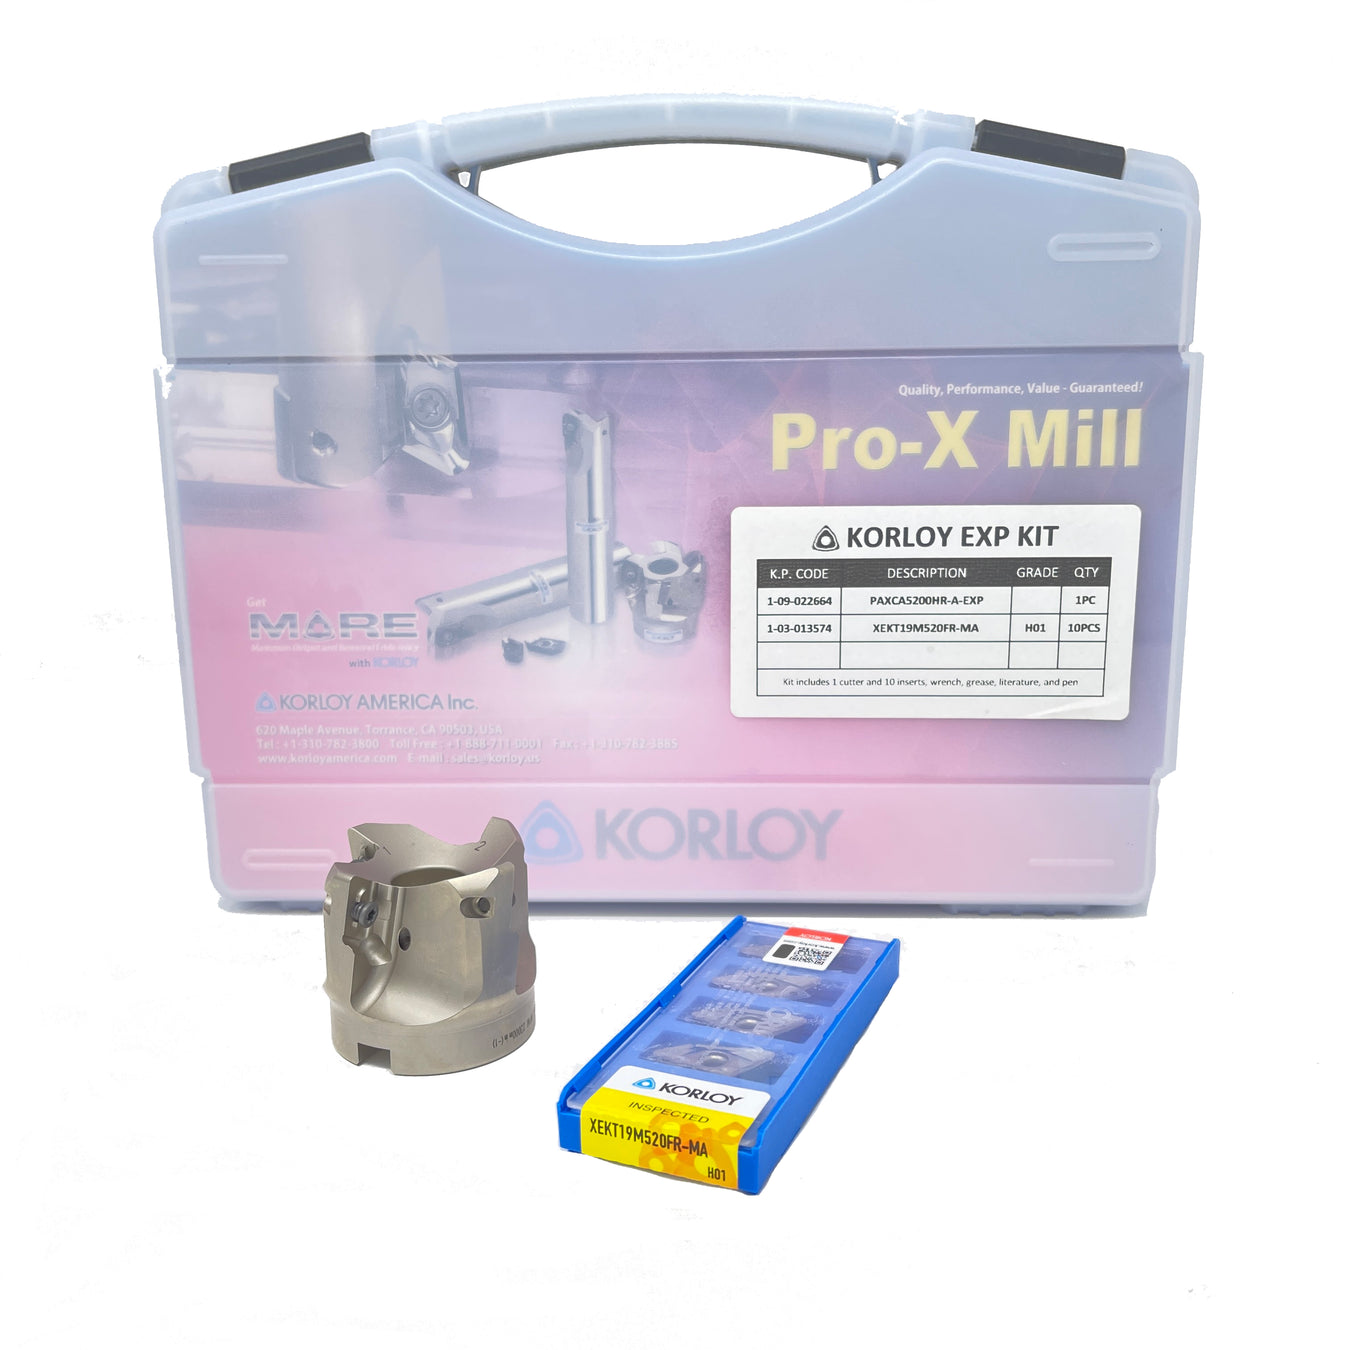 Pro-X Mill Kits